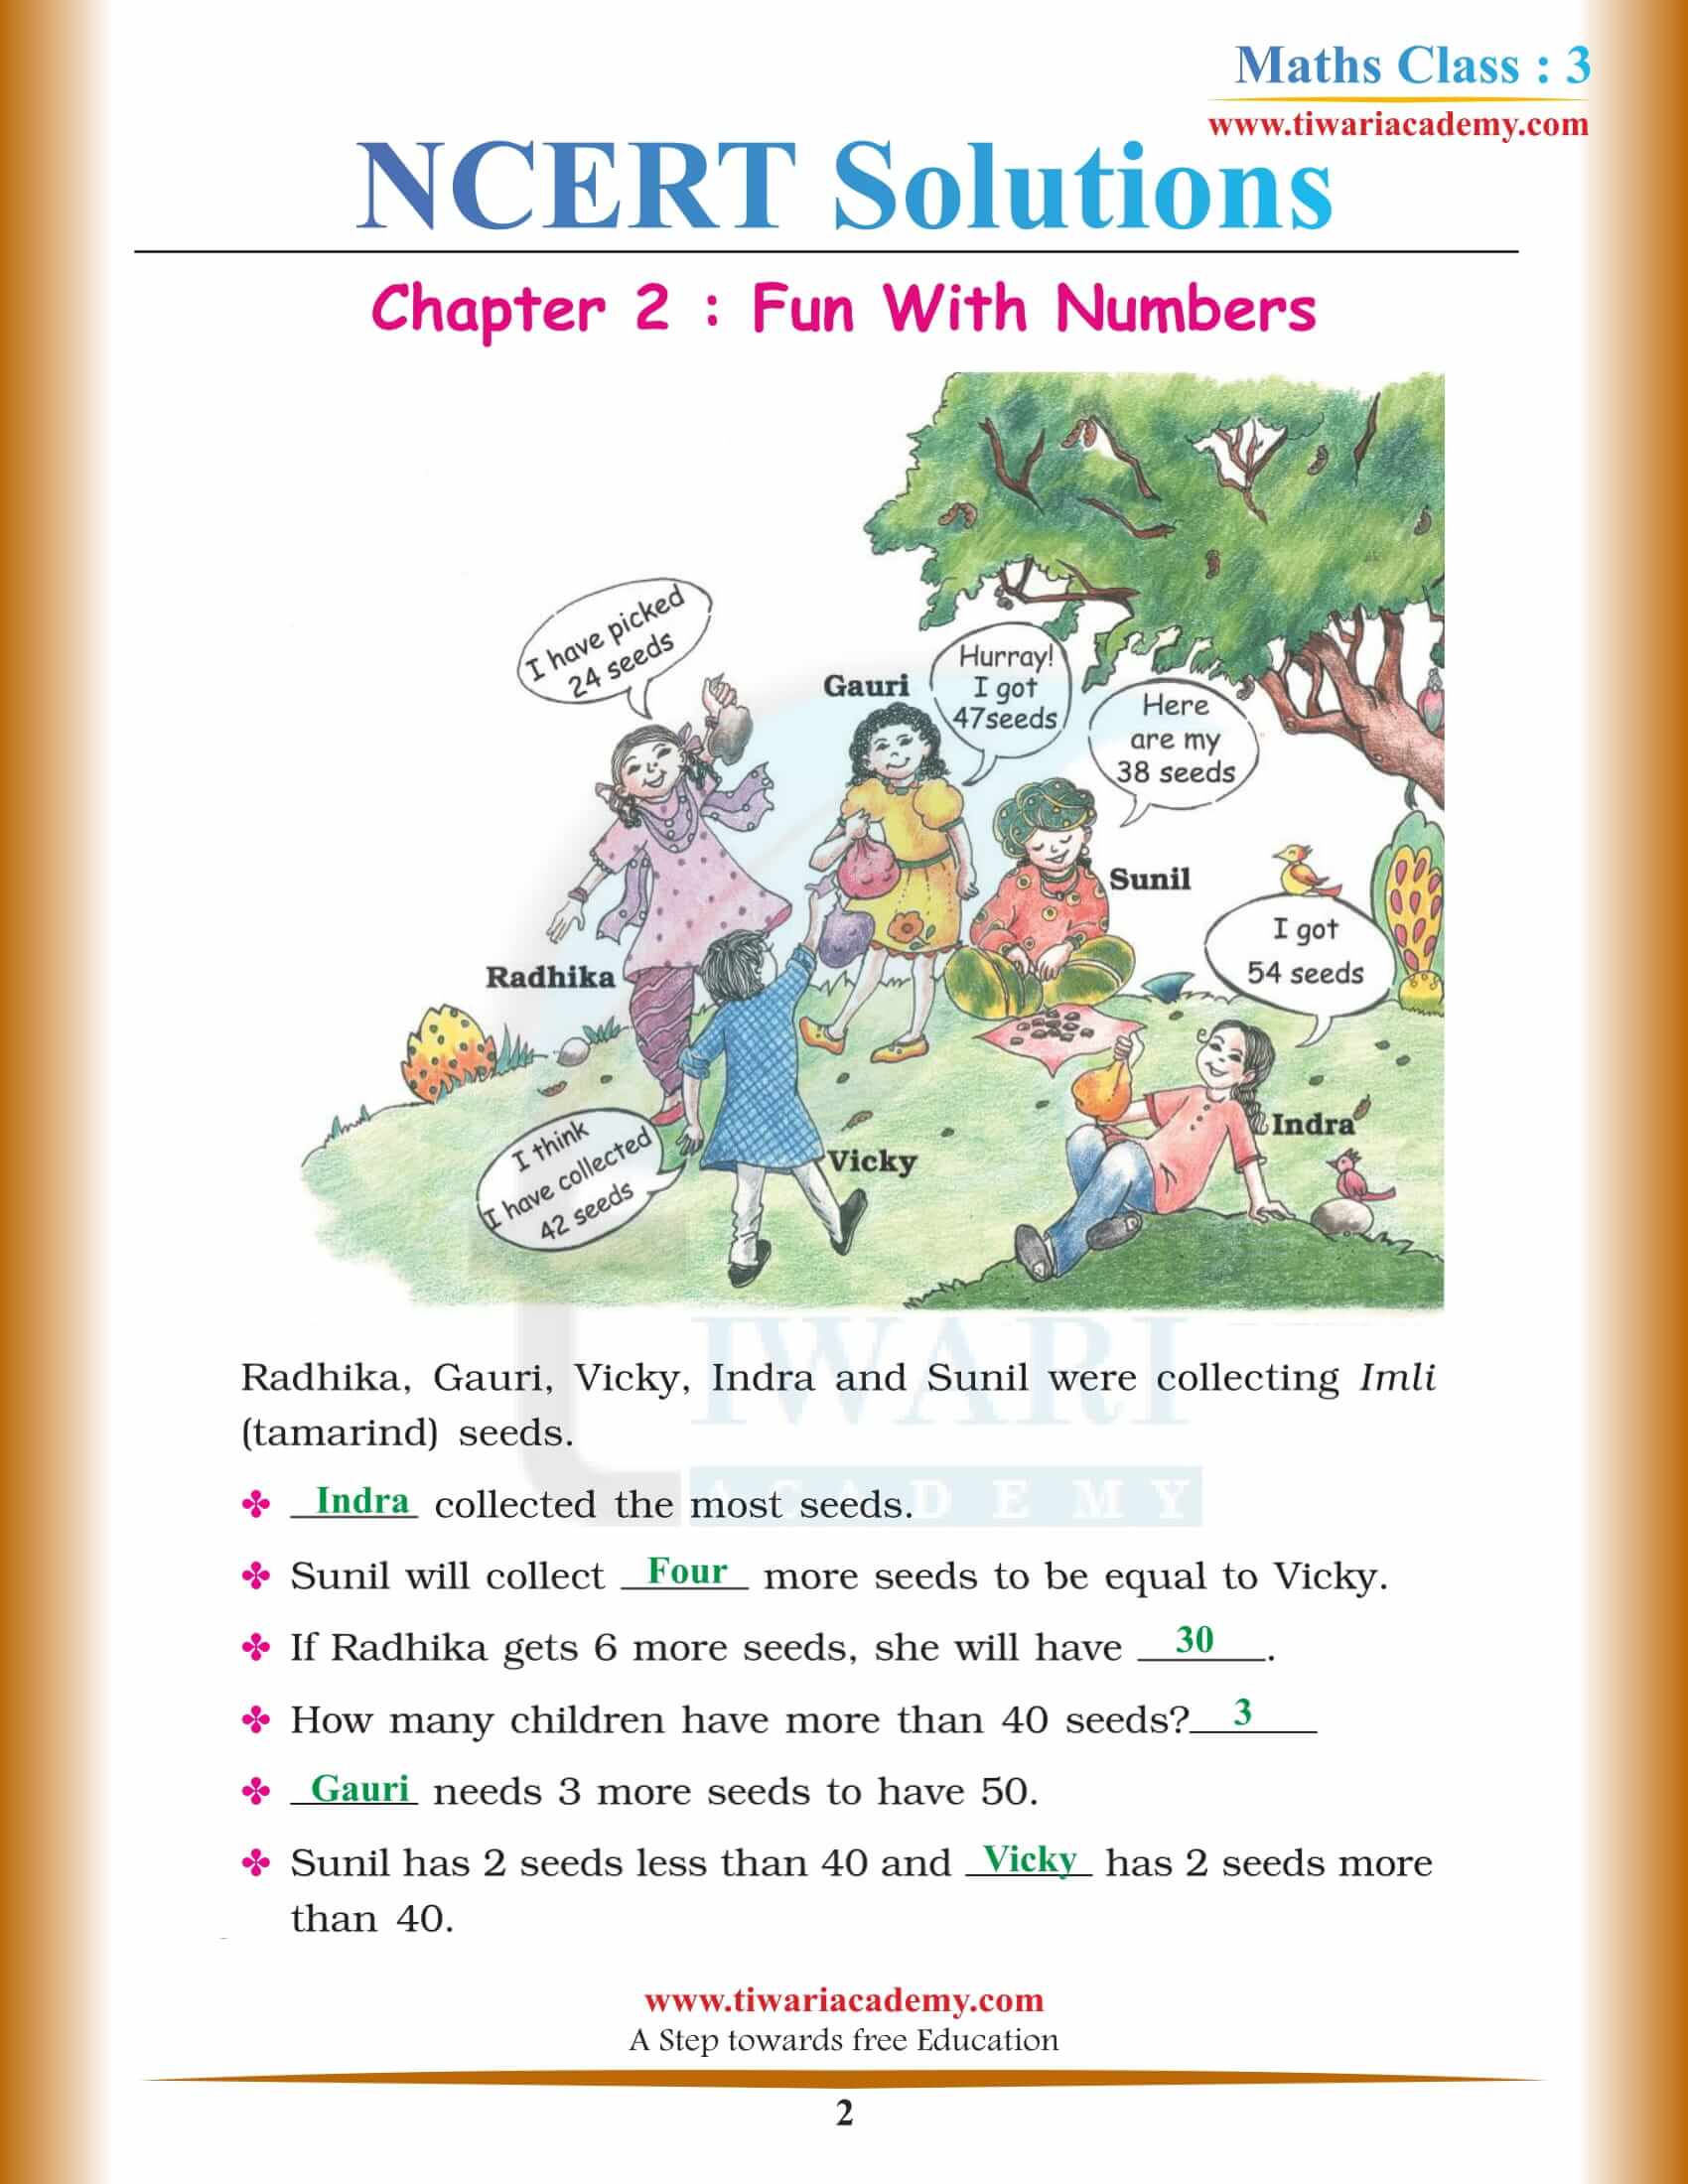 NCERT Solutions for Class 3 Maths Chapter 2